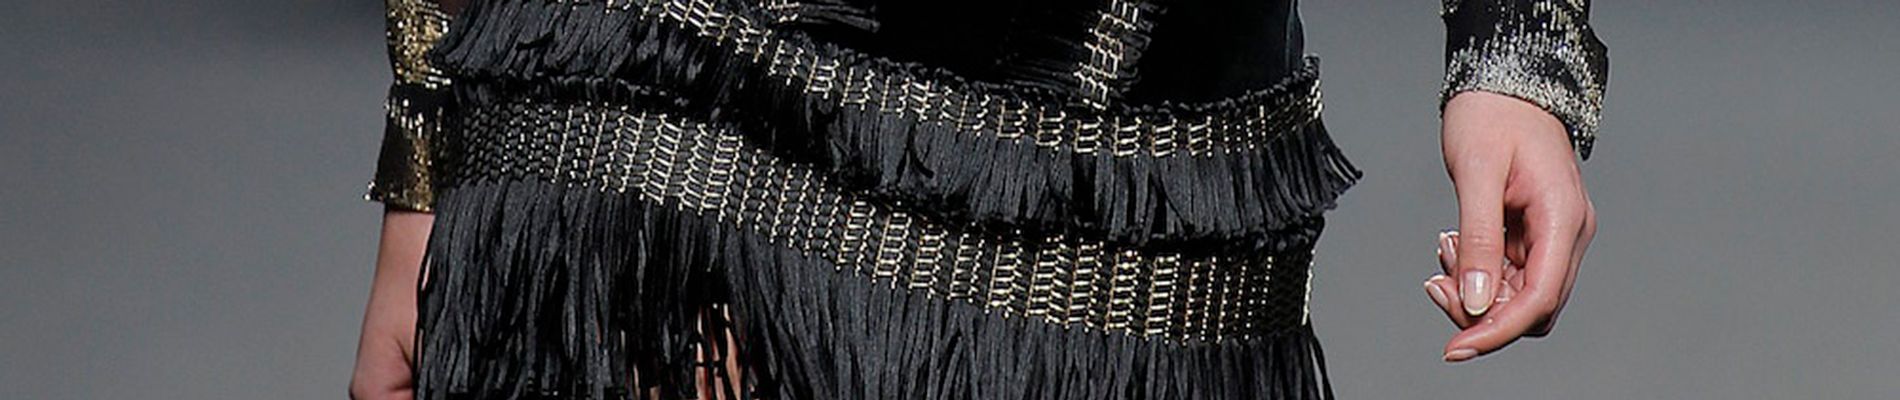 Applications de mailles métalliques en acier inoxydable sur une jupe de la créatrice Teresa Helbig